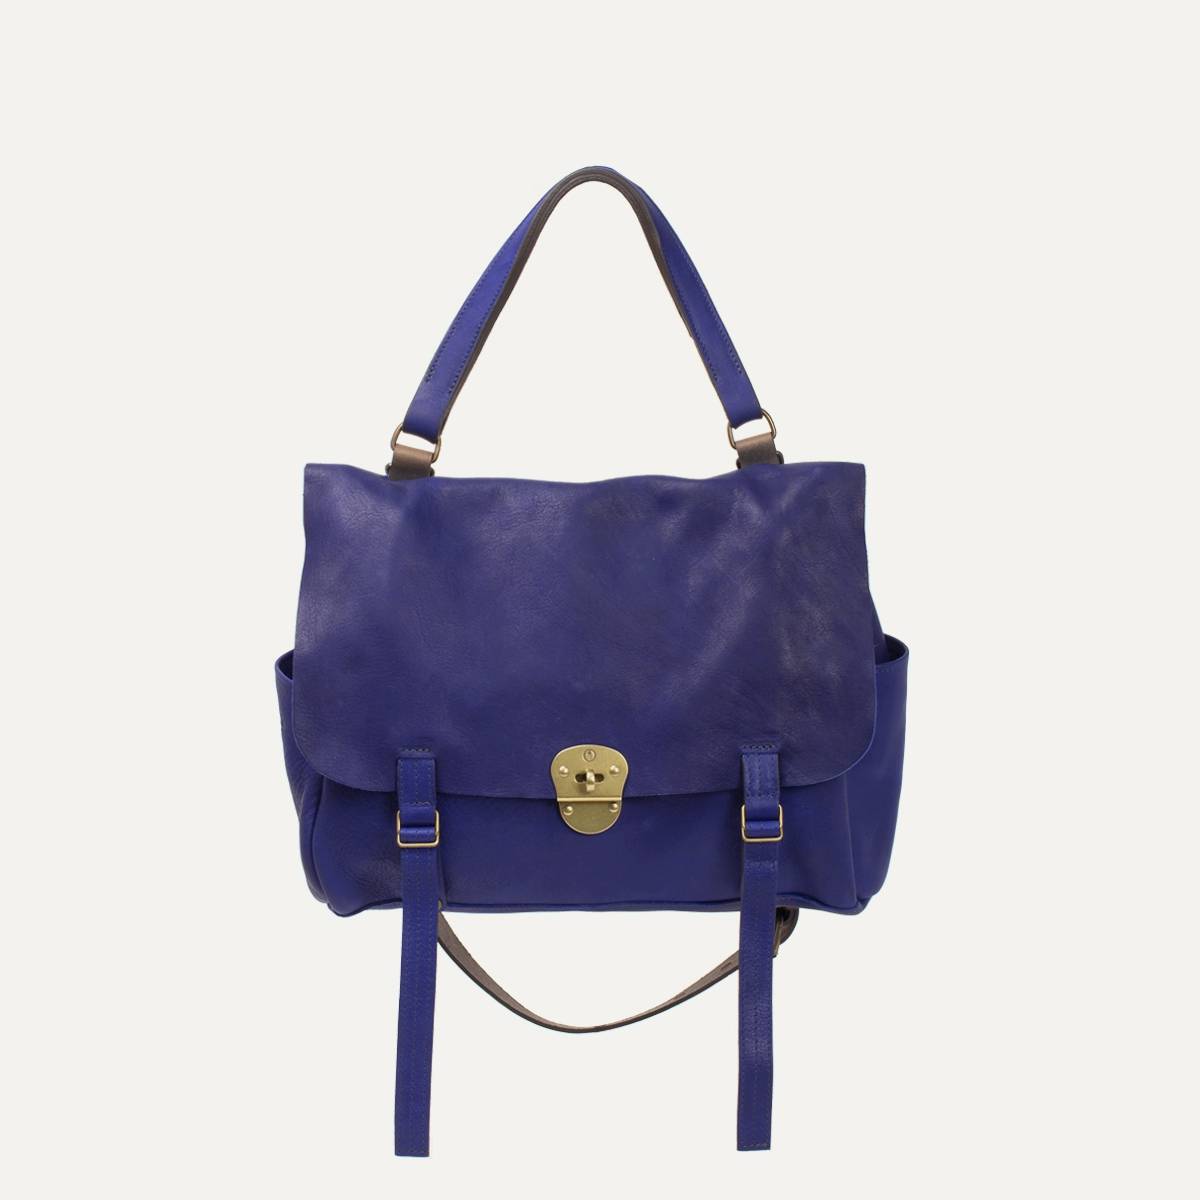 Bleu de Chauffe, Bags, Coline Bag By Bleu De Chauffe